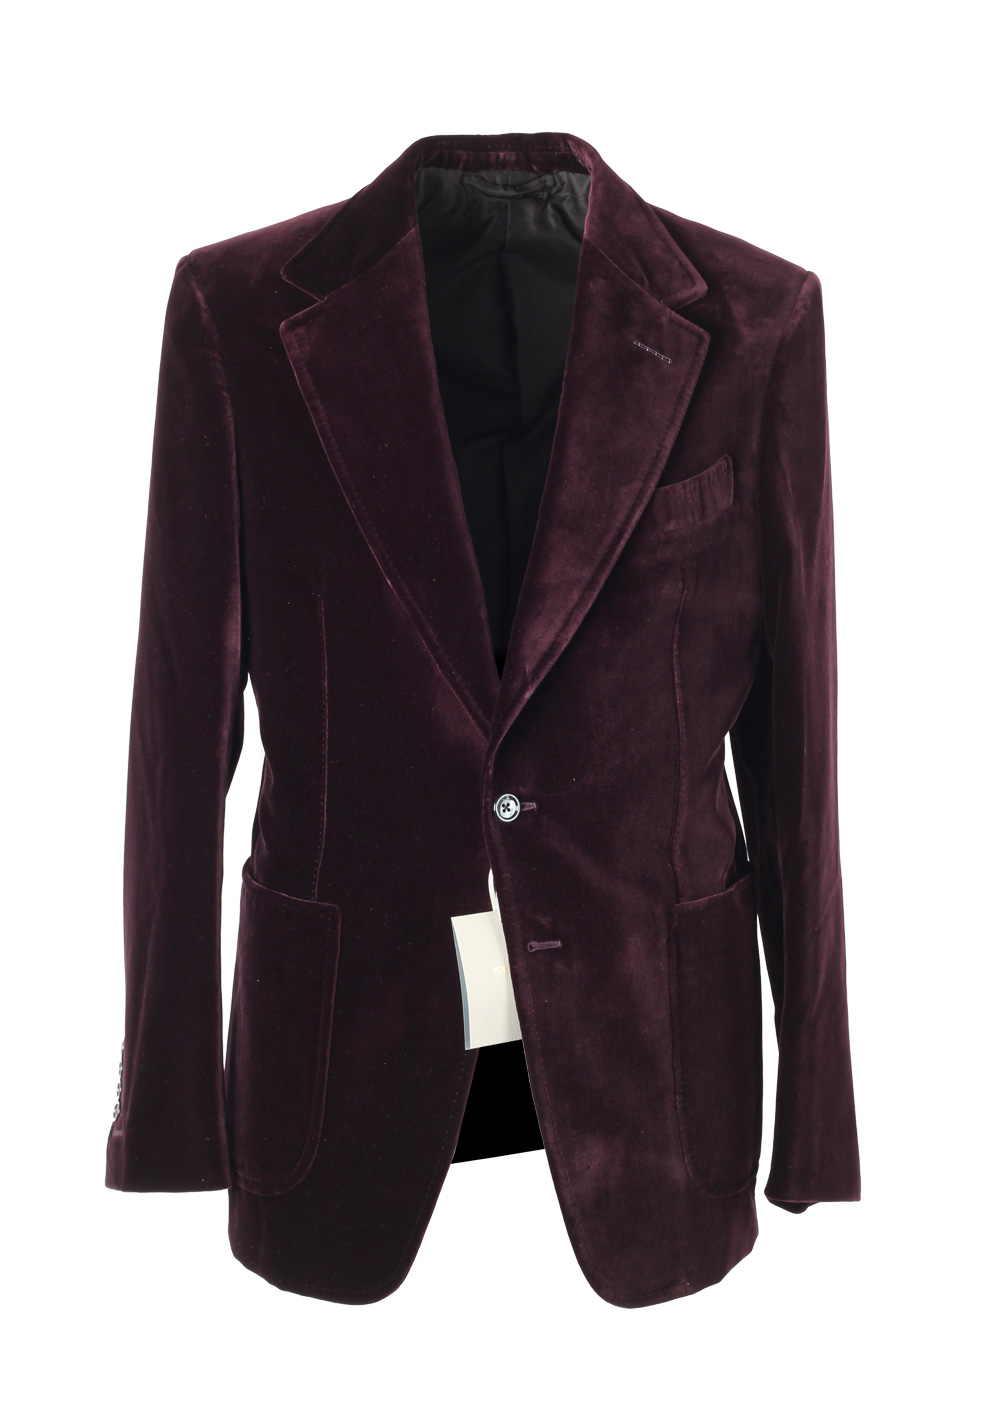 TOM FORD Shelton Aubergine Velvet Sport Coat Tuxedo Dinner Jacket Size 48 / 38R U.S. | Costume Limité